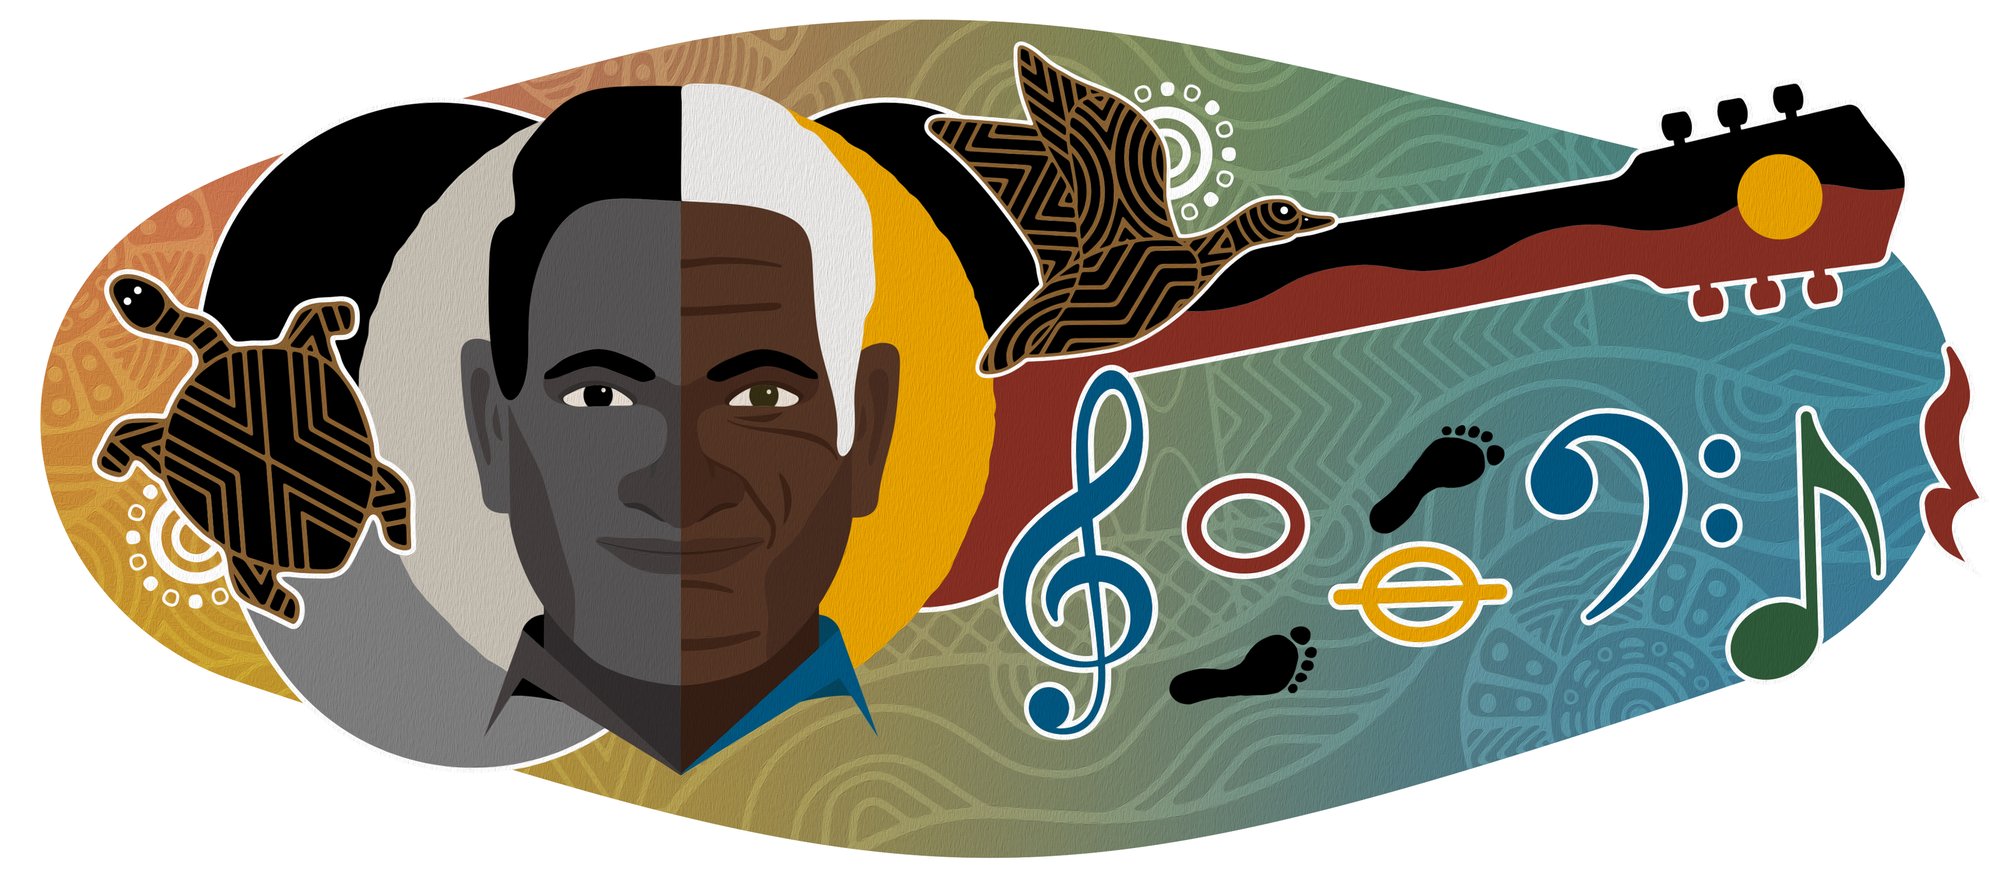 Google Doodle artwork to celebrate Dr. James “Jimmy” Oswald Little;